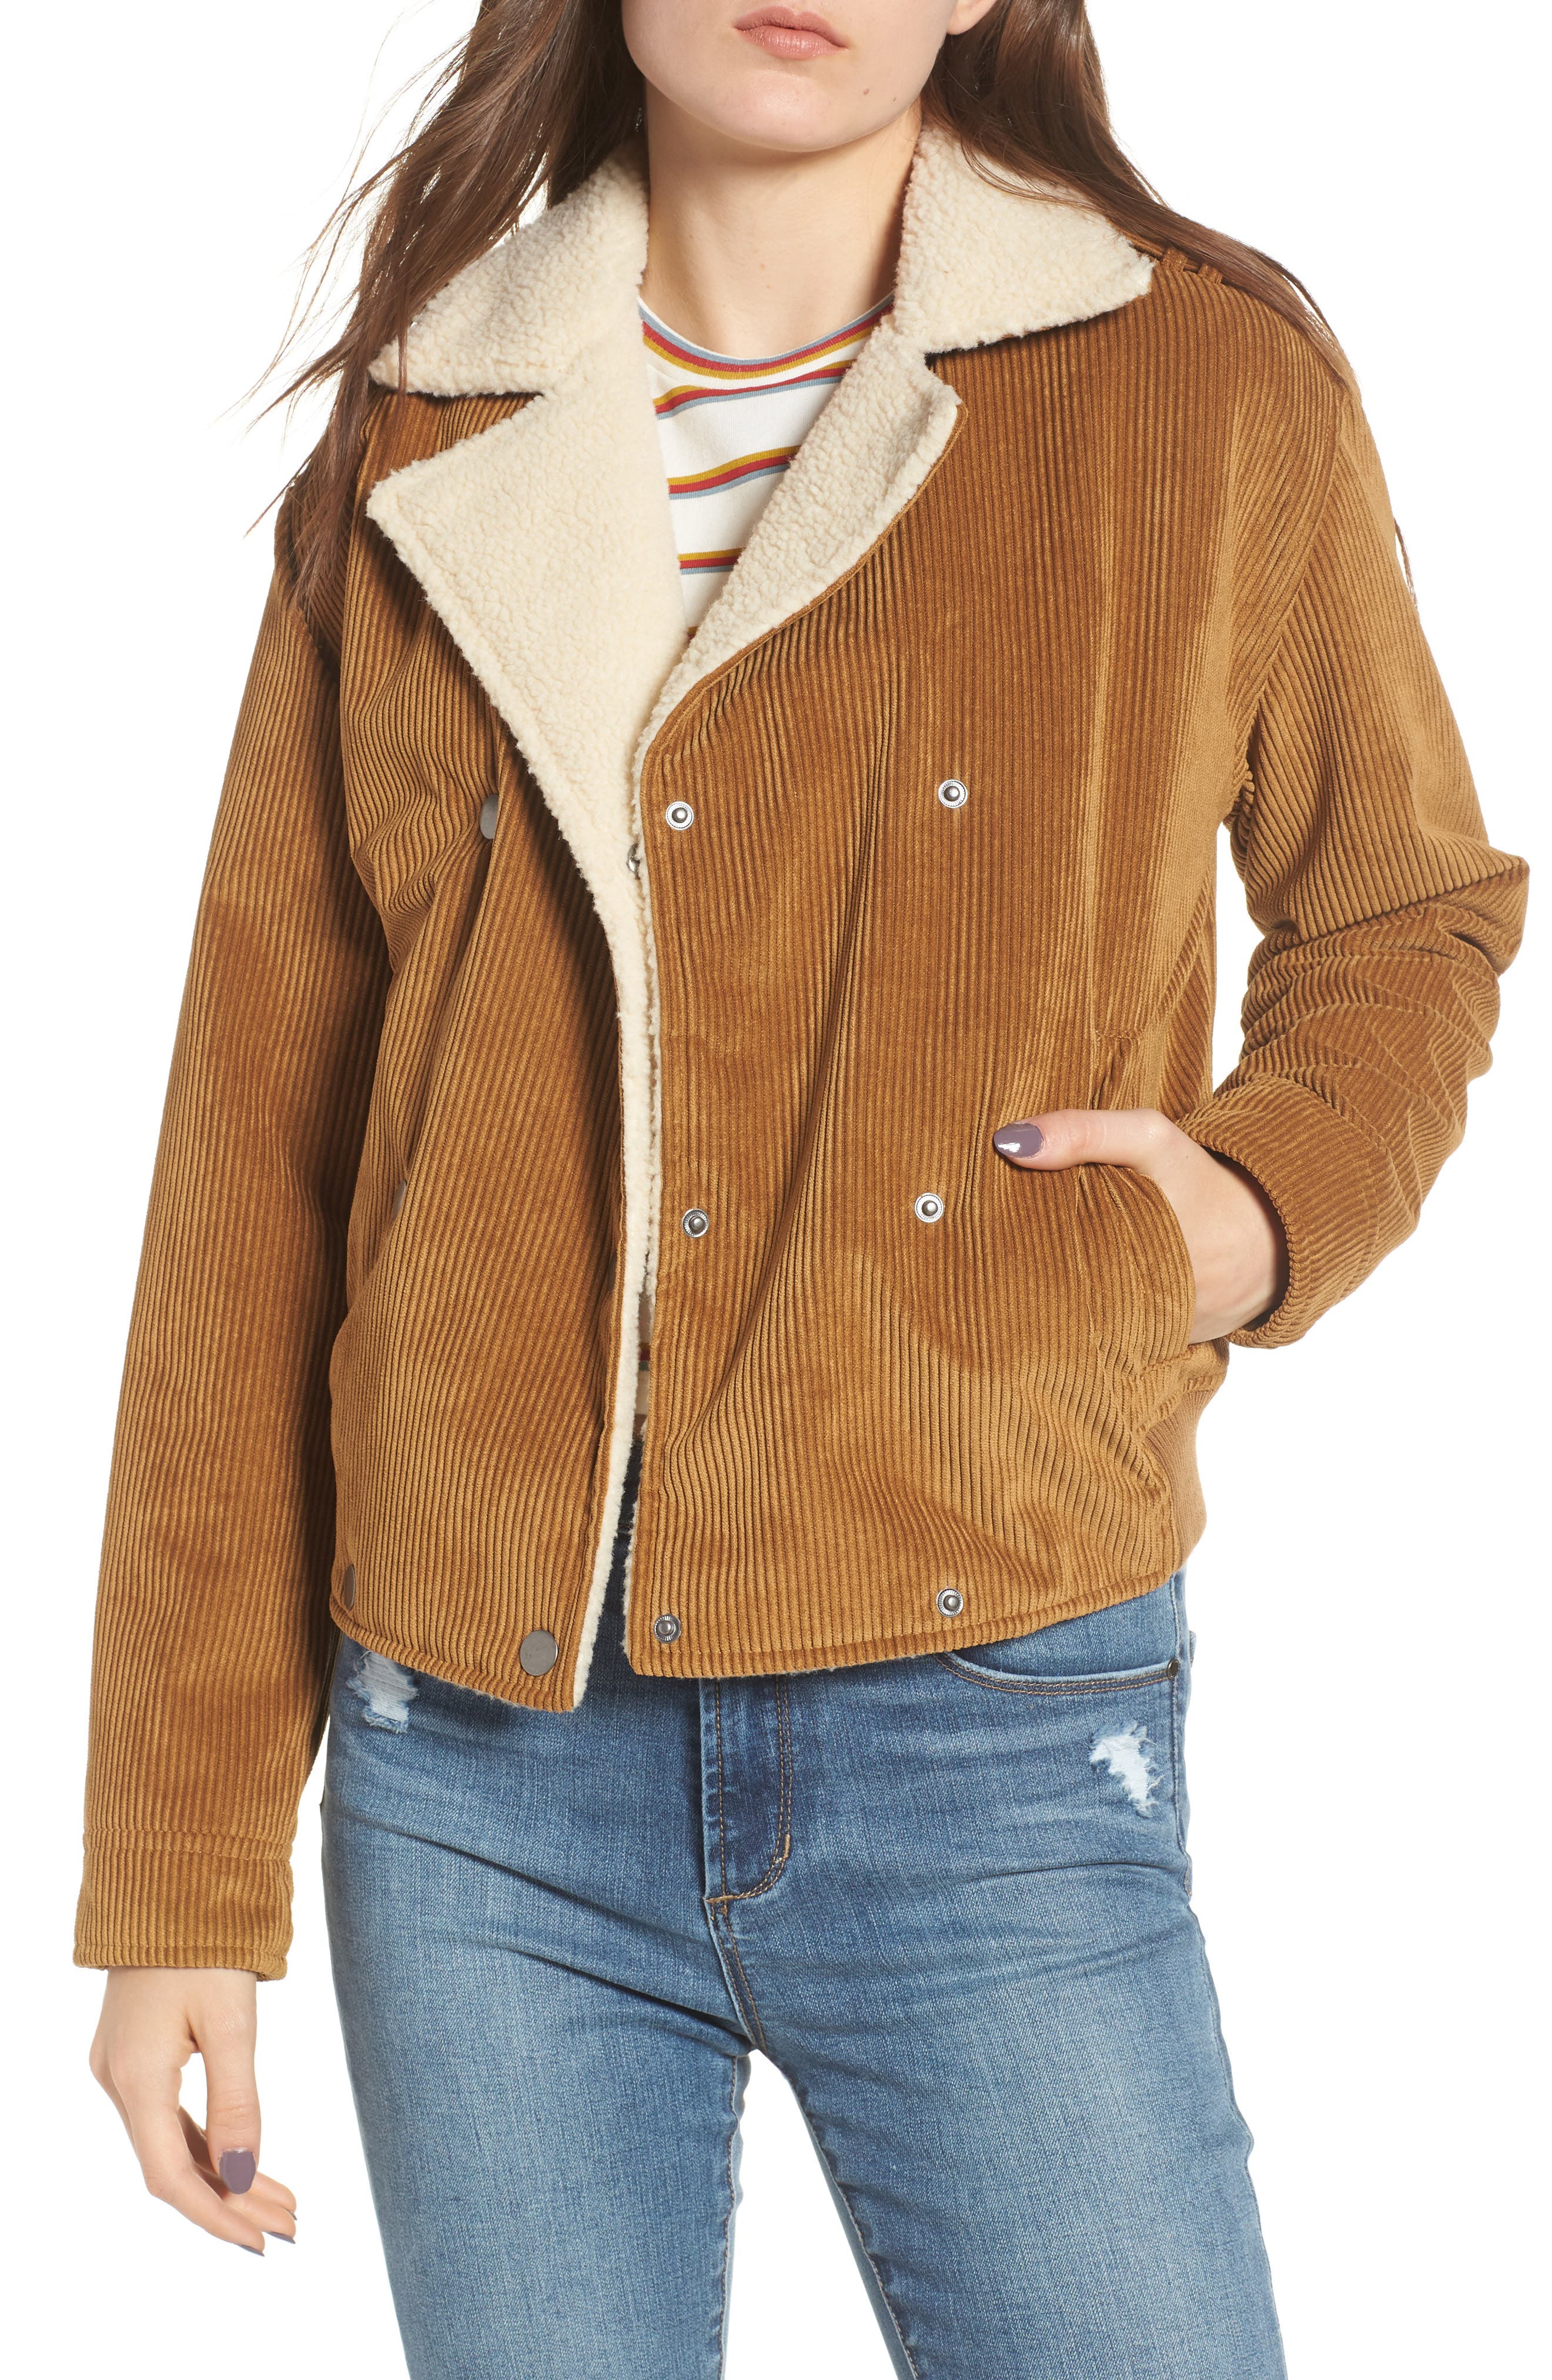 corduroy jacket with fleece